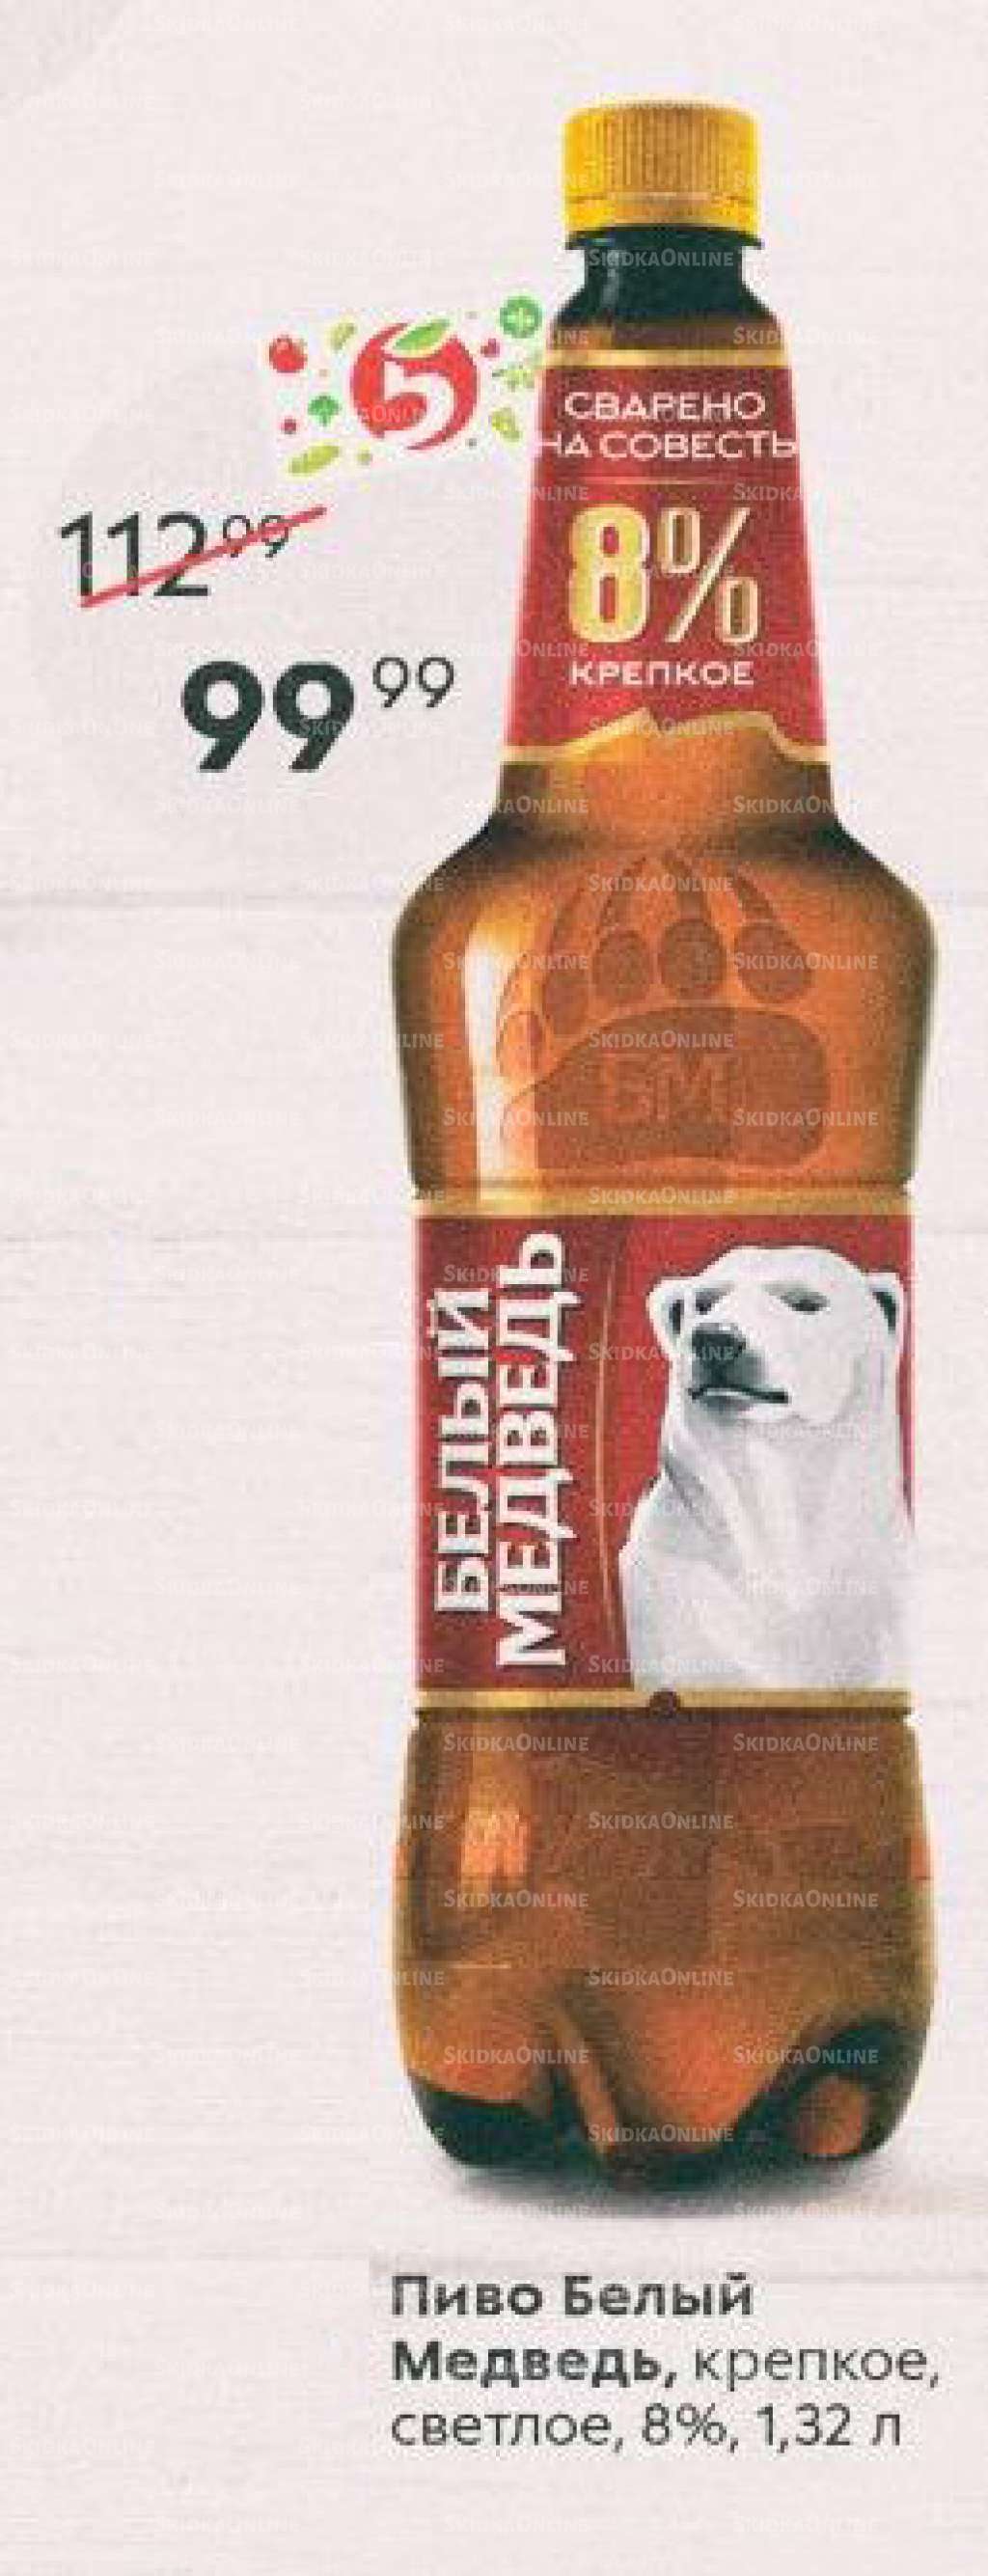 Обзор пива Белый Медведь